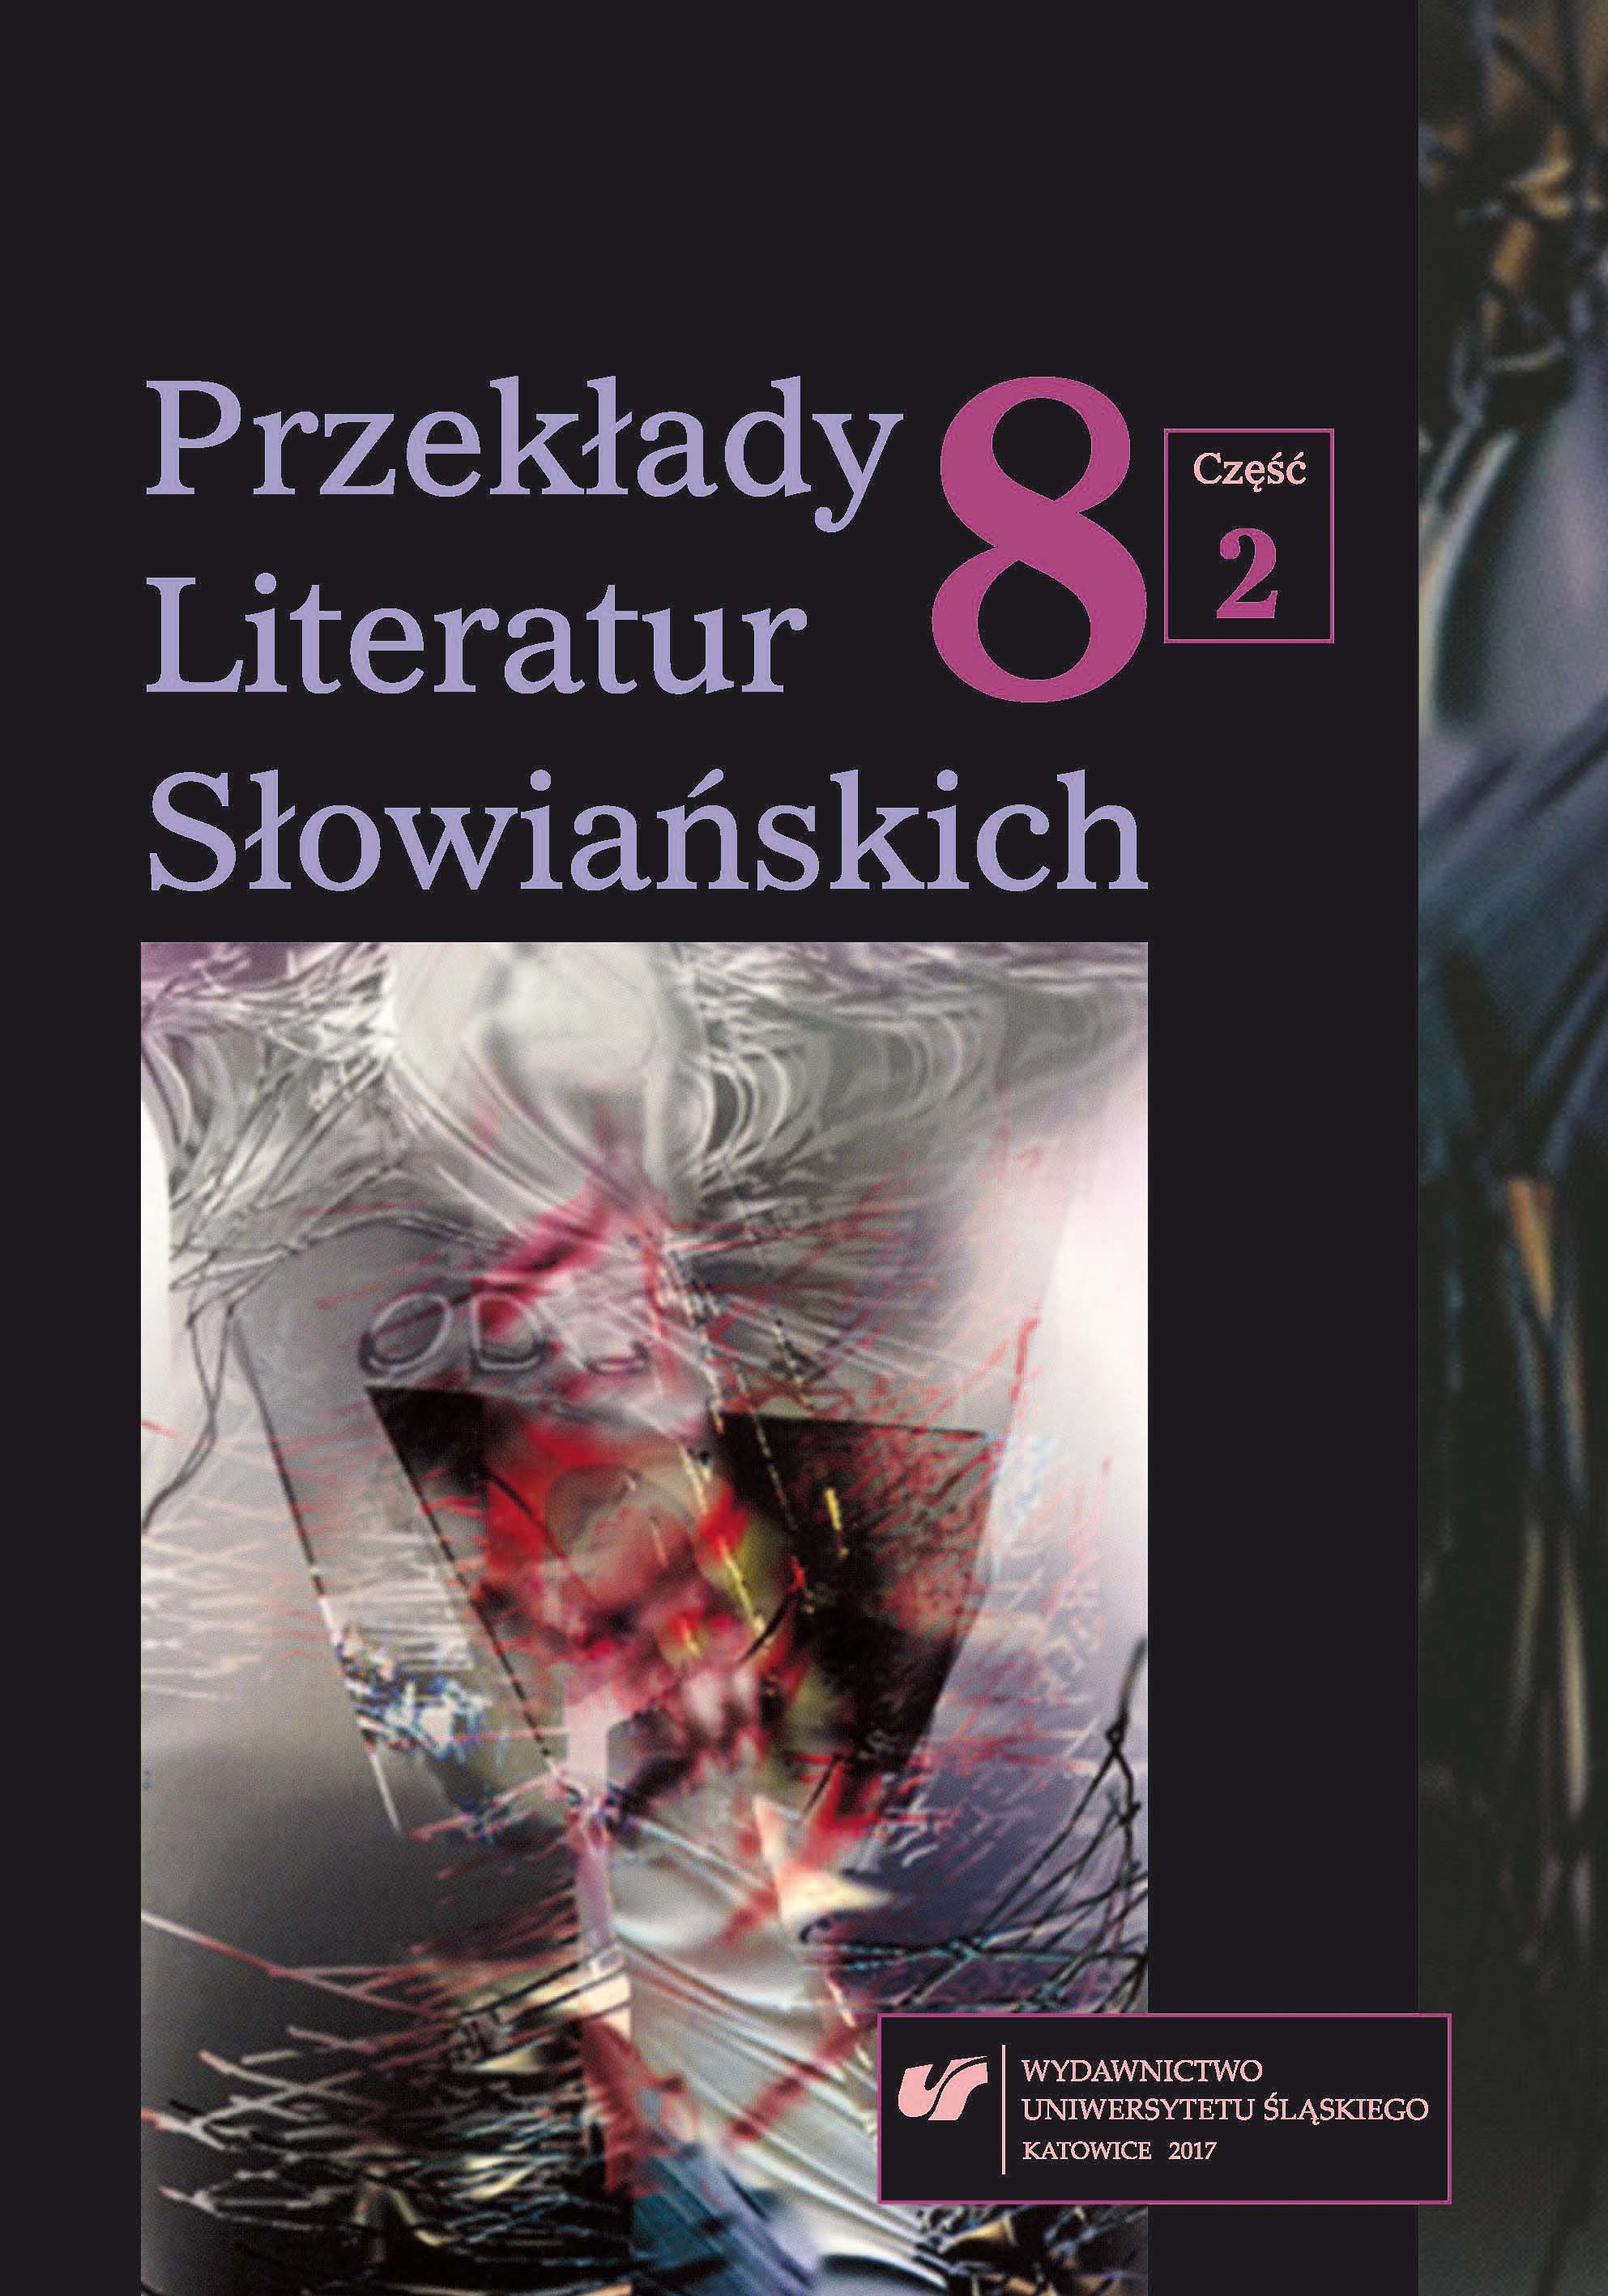 Słowacka literatura współczesna w polskim horyzoncie odbioru w 2016 roku